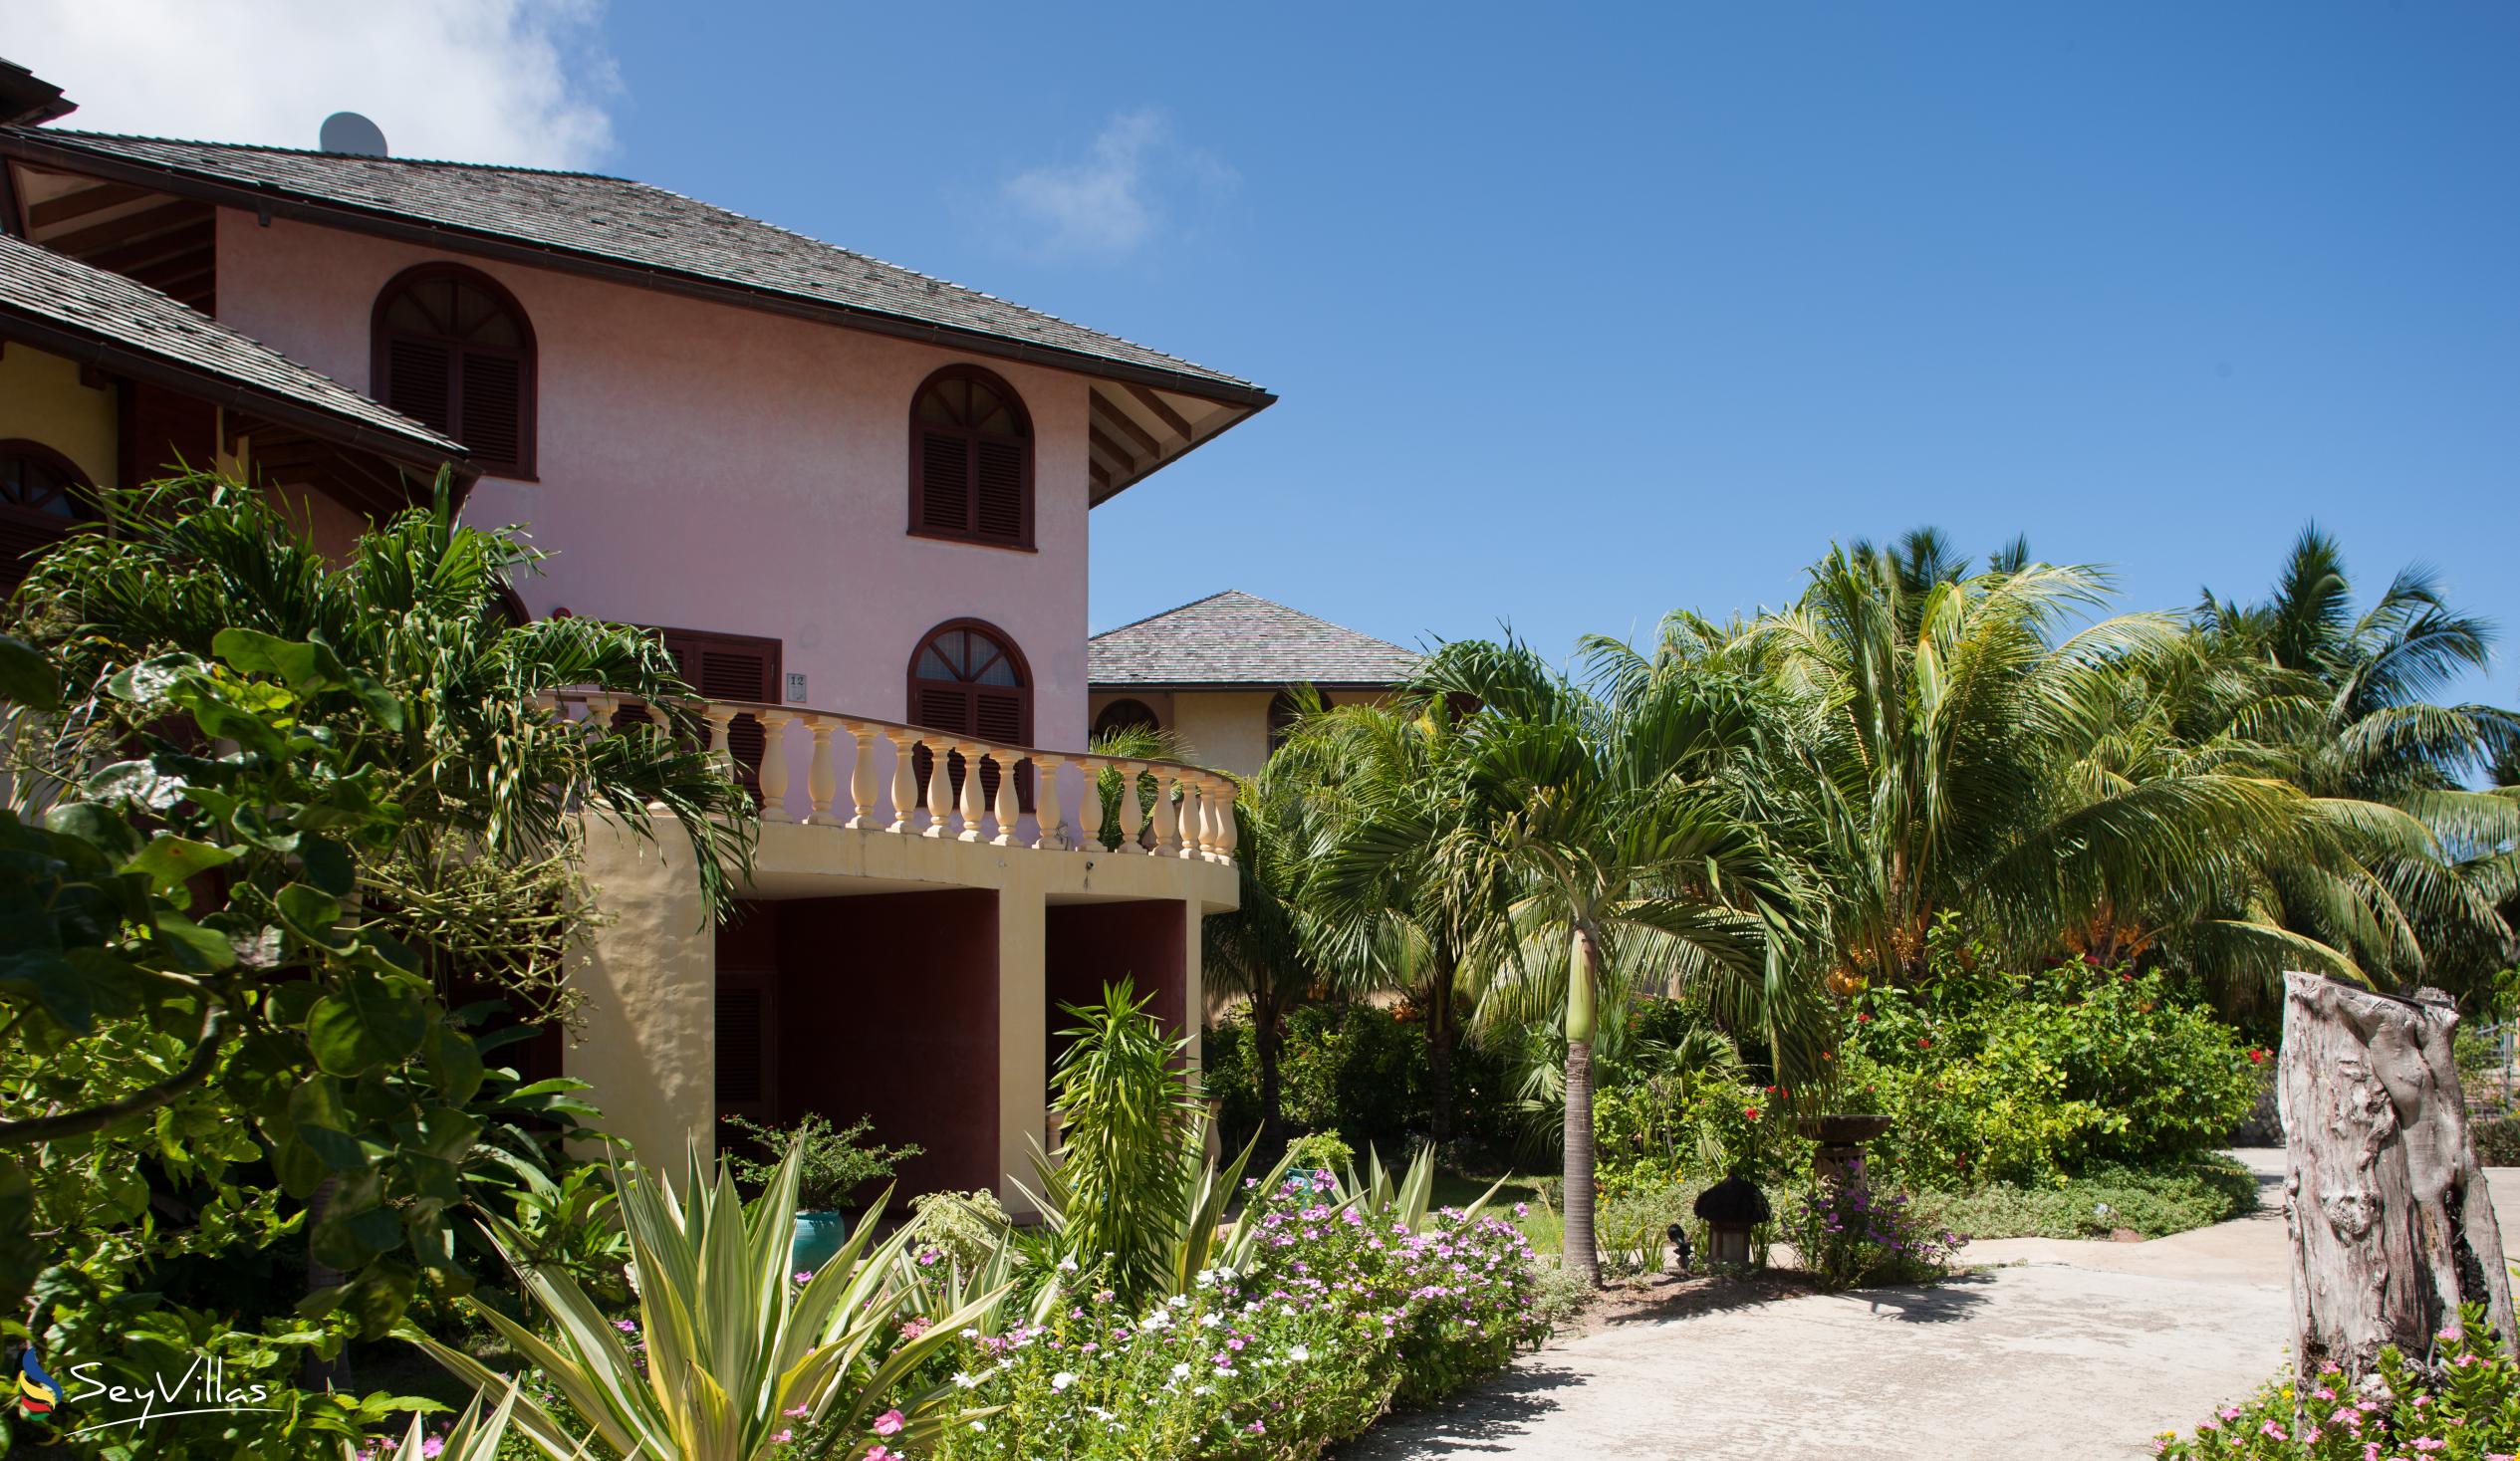 Foto 3: Castello Beach Hotel - Aussenbereich - Praslin (Seychellen)